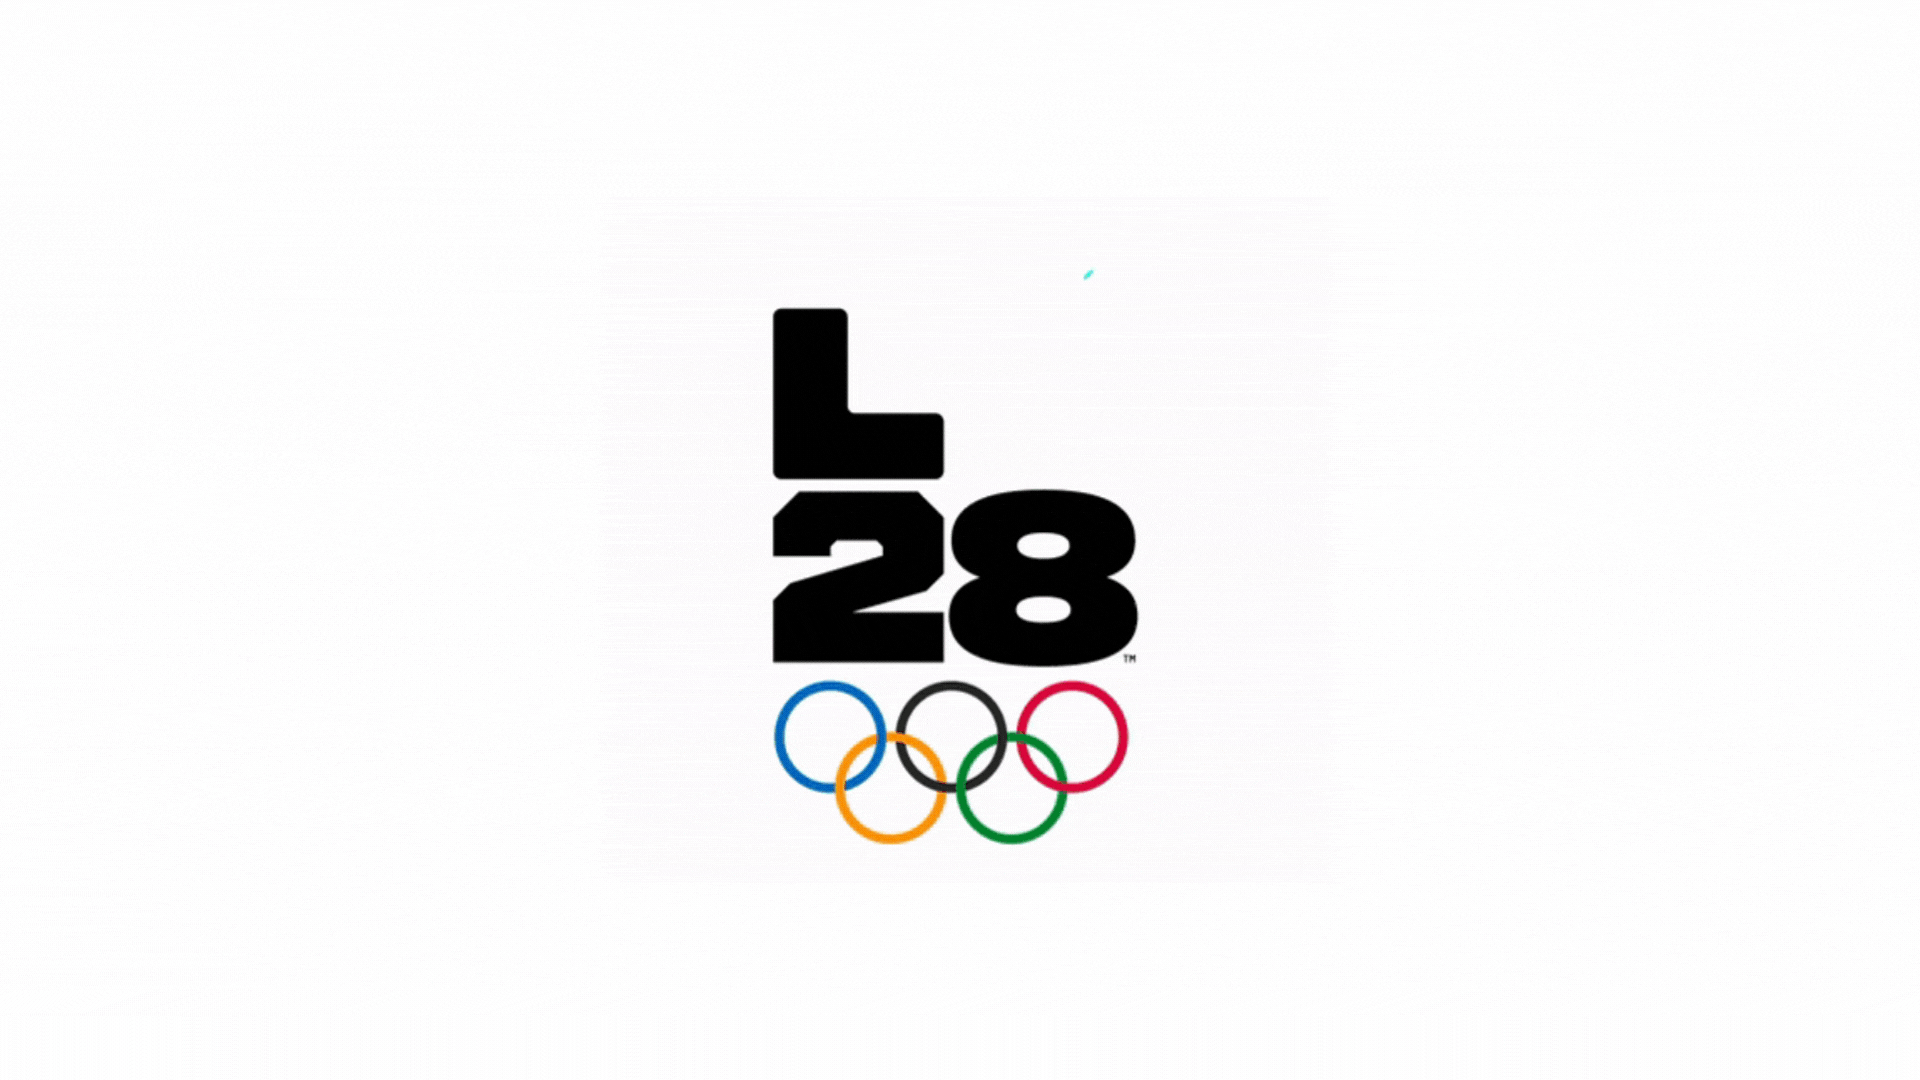 Jogos Olímpicos on X: O comitê @LA28 propõe cinco esportes adicionais para  os Jogos Olímpicos de 2028! #Olympics (🧵 1/10) ⚾ Beisebol/softbol 🏏  Críquete 🏈 Flag football 🥍 Lacrosse ⚫ Squash  / X